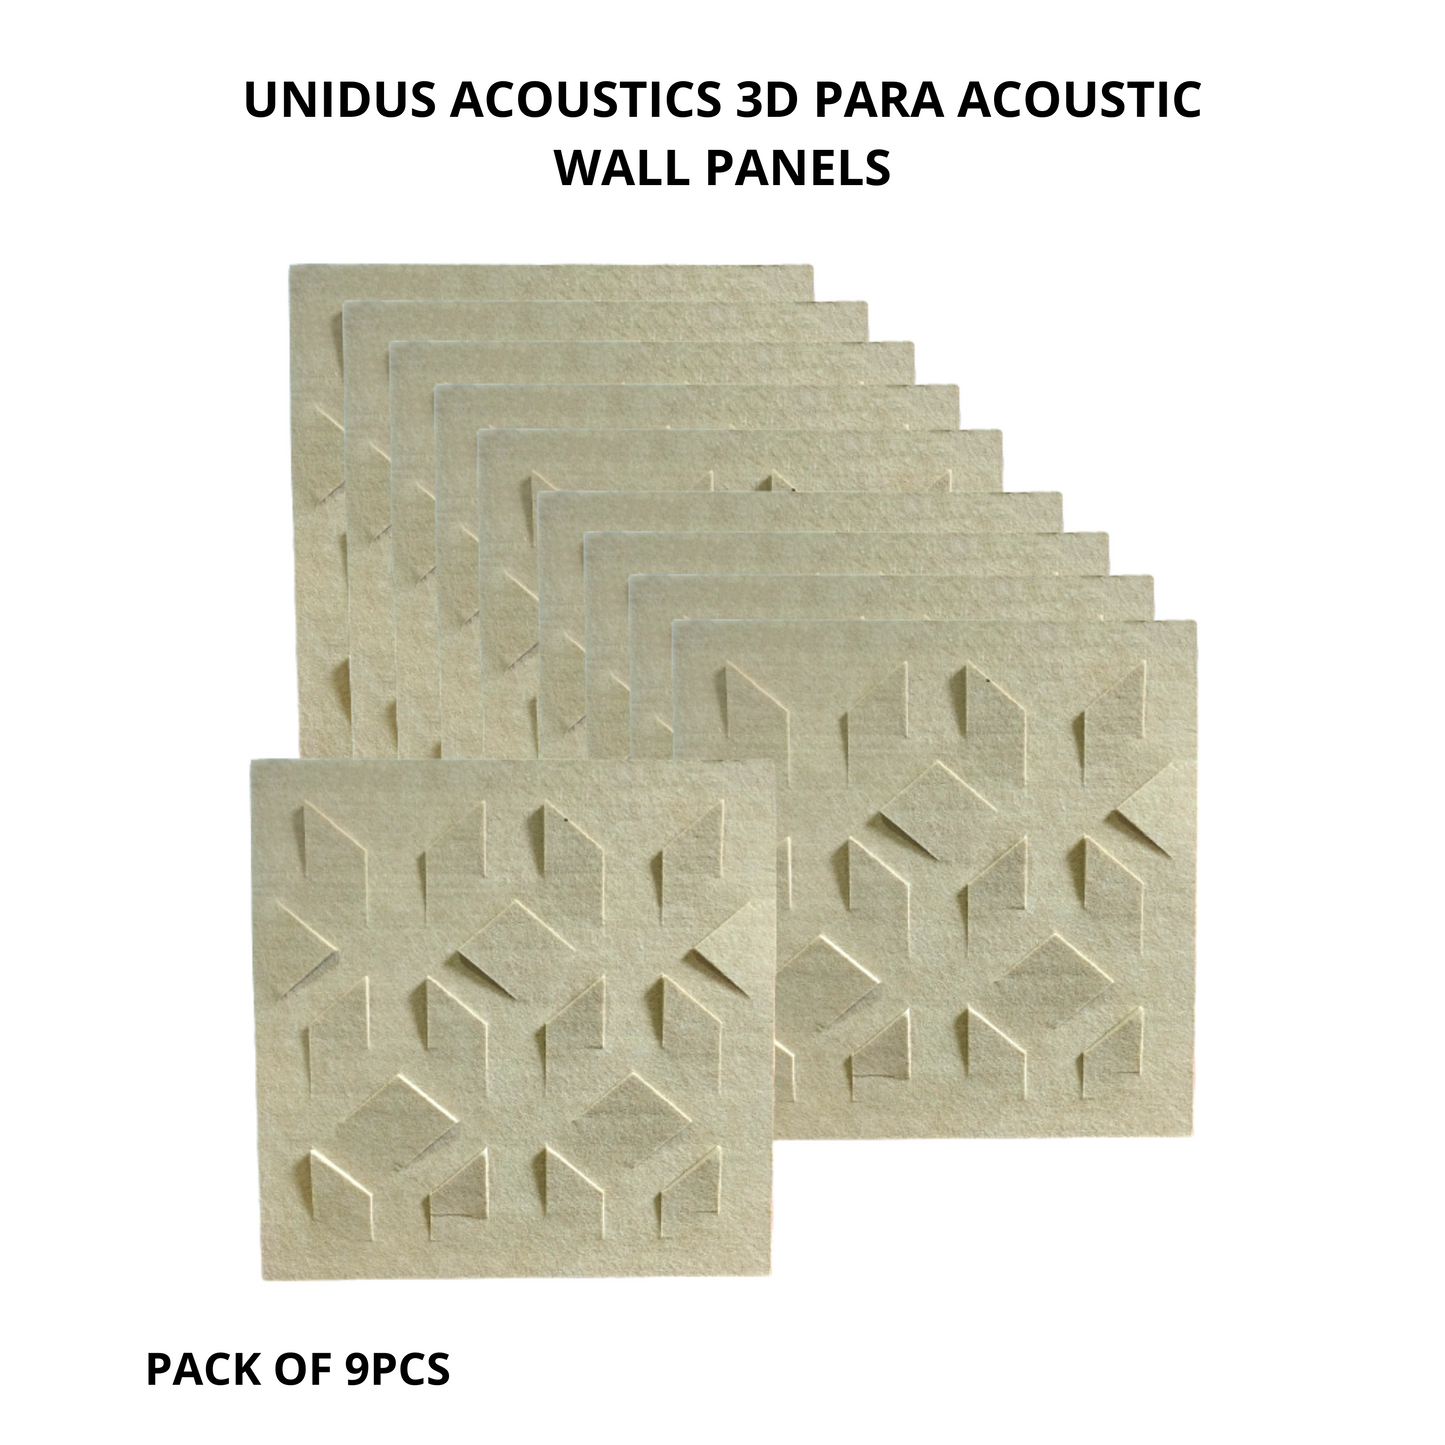 3D Blade Acoustic Wall Panels, 12"x12"x 9mm, Desert Sand Soundproof Panels | Acoustic Panel for Soundproofing